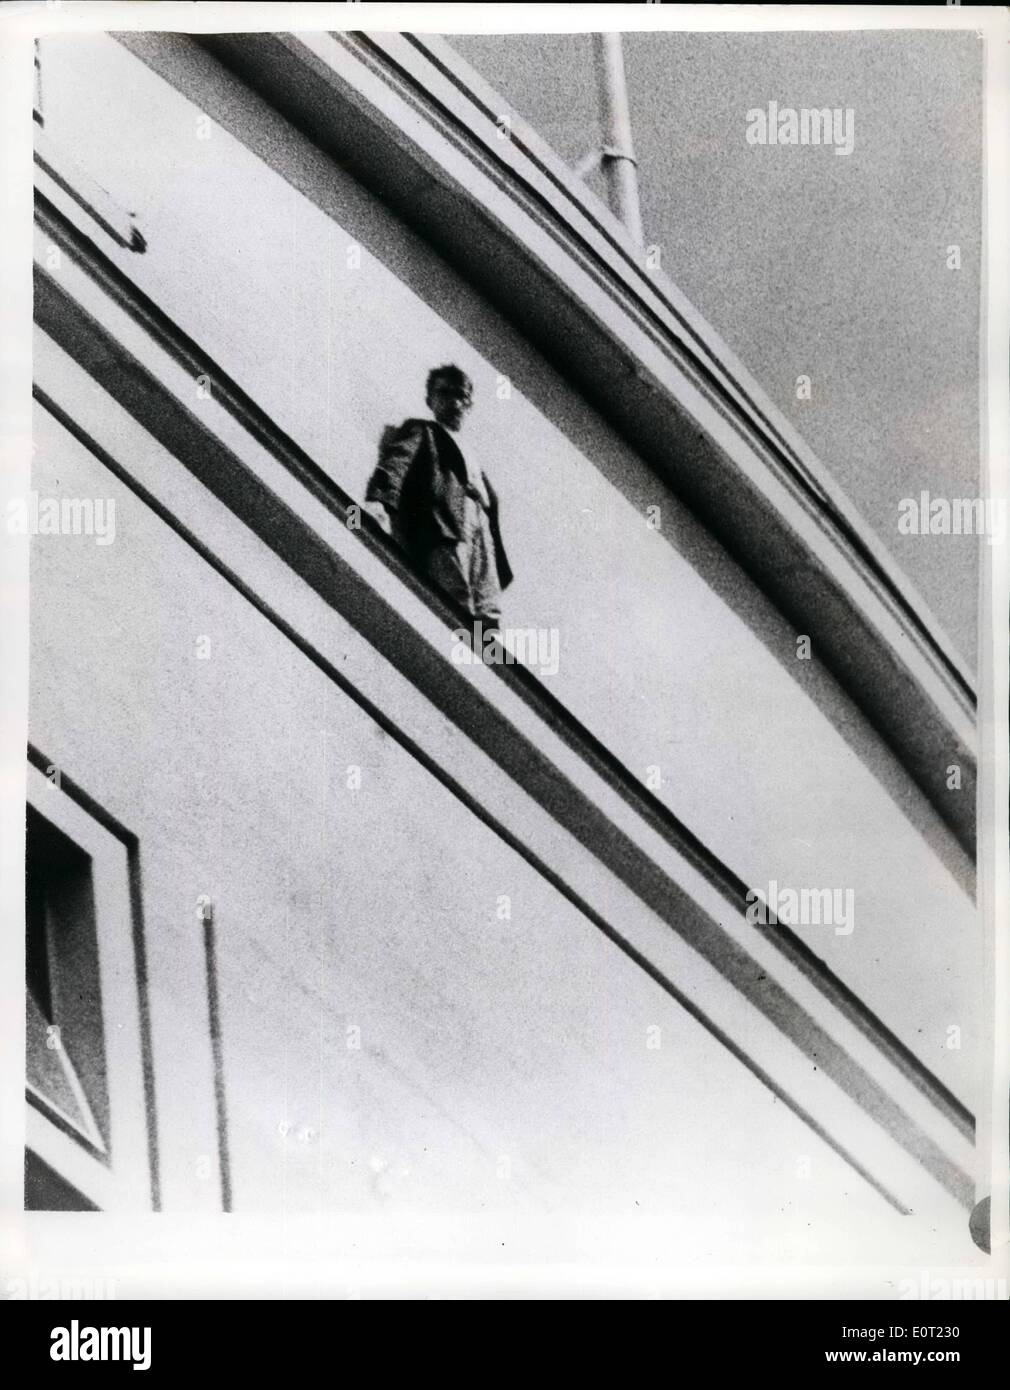 Lug. 07, 1960 - L'UOMO IN AMORE è salvato da un parapetto 100-piedi: la folla vide un uomo che ha dichiarato di aver avuto jilted, in piedi al di fuori del parapetto sul tetto del settimo piano di un grande magazzino di Bristol oggi.. Egli fu presa la balaustra, proteso verso l'esterno e guardando verso il basso in corrispondenza della pavimentazione affollata 100-piedi sotto. La polizia è andato al tetto e una scaletta della piattaforma girevole è arrivato da vigili del fuoco in sede. I vigili del fuoco hanno aderito la polizia e abbiamo parlato per l'uomo, che alla fine hanno girato verso di loro e fu poi afferrato e ha contribuito alla sicurezza Foto Stock